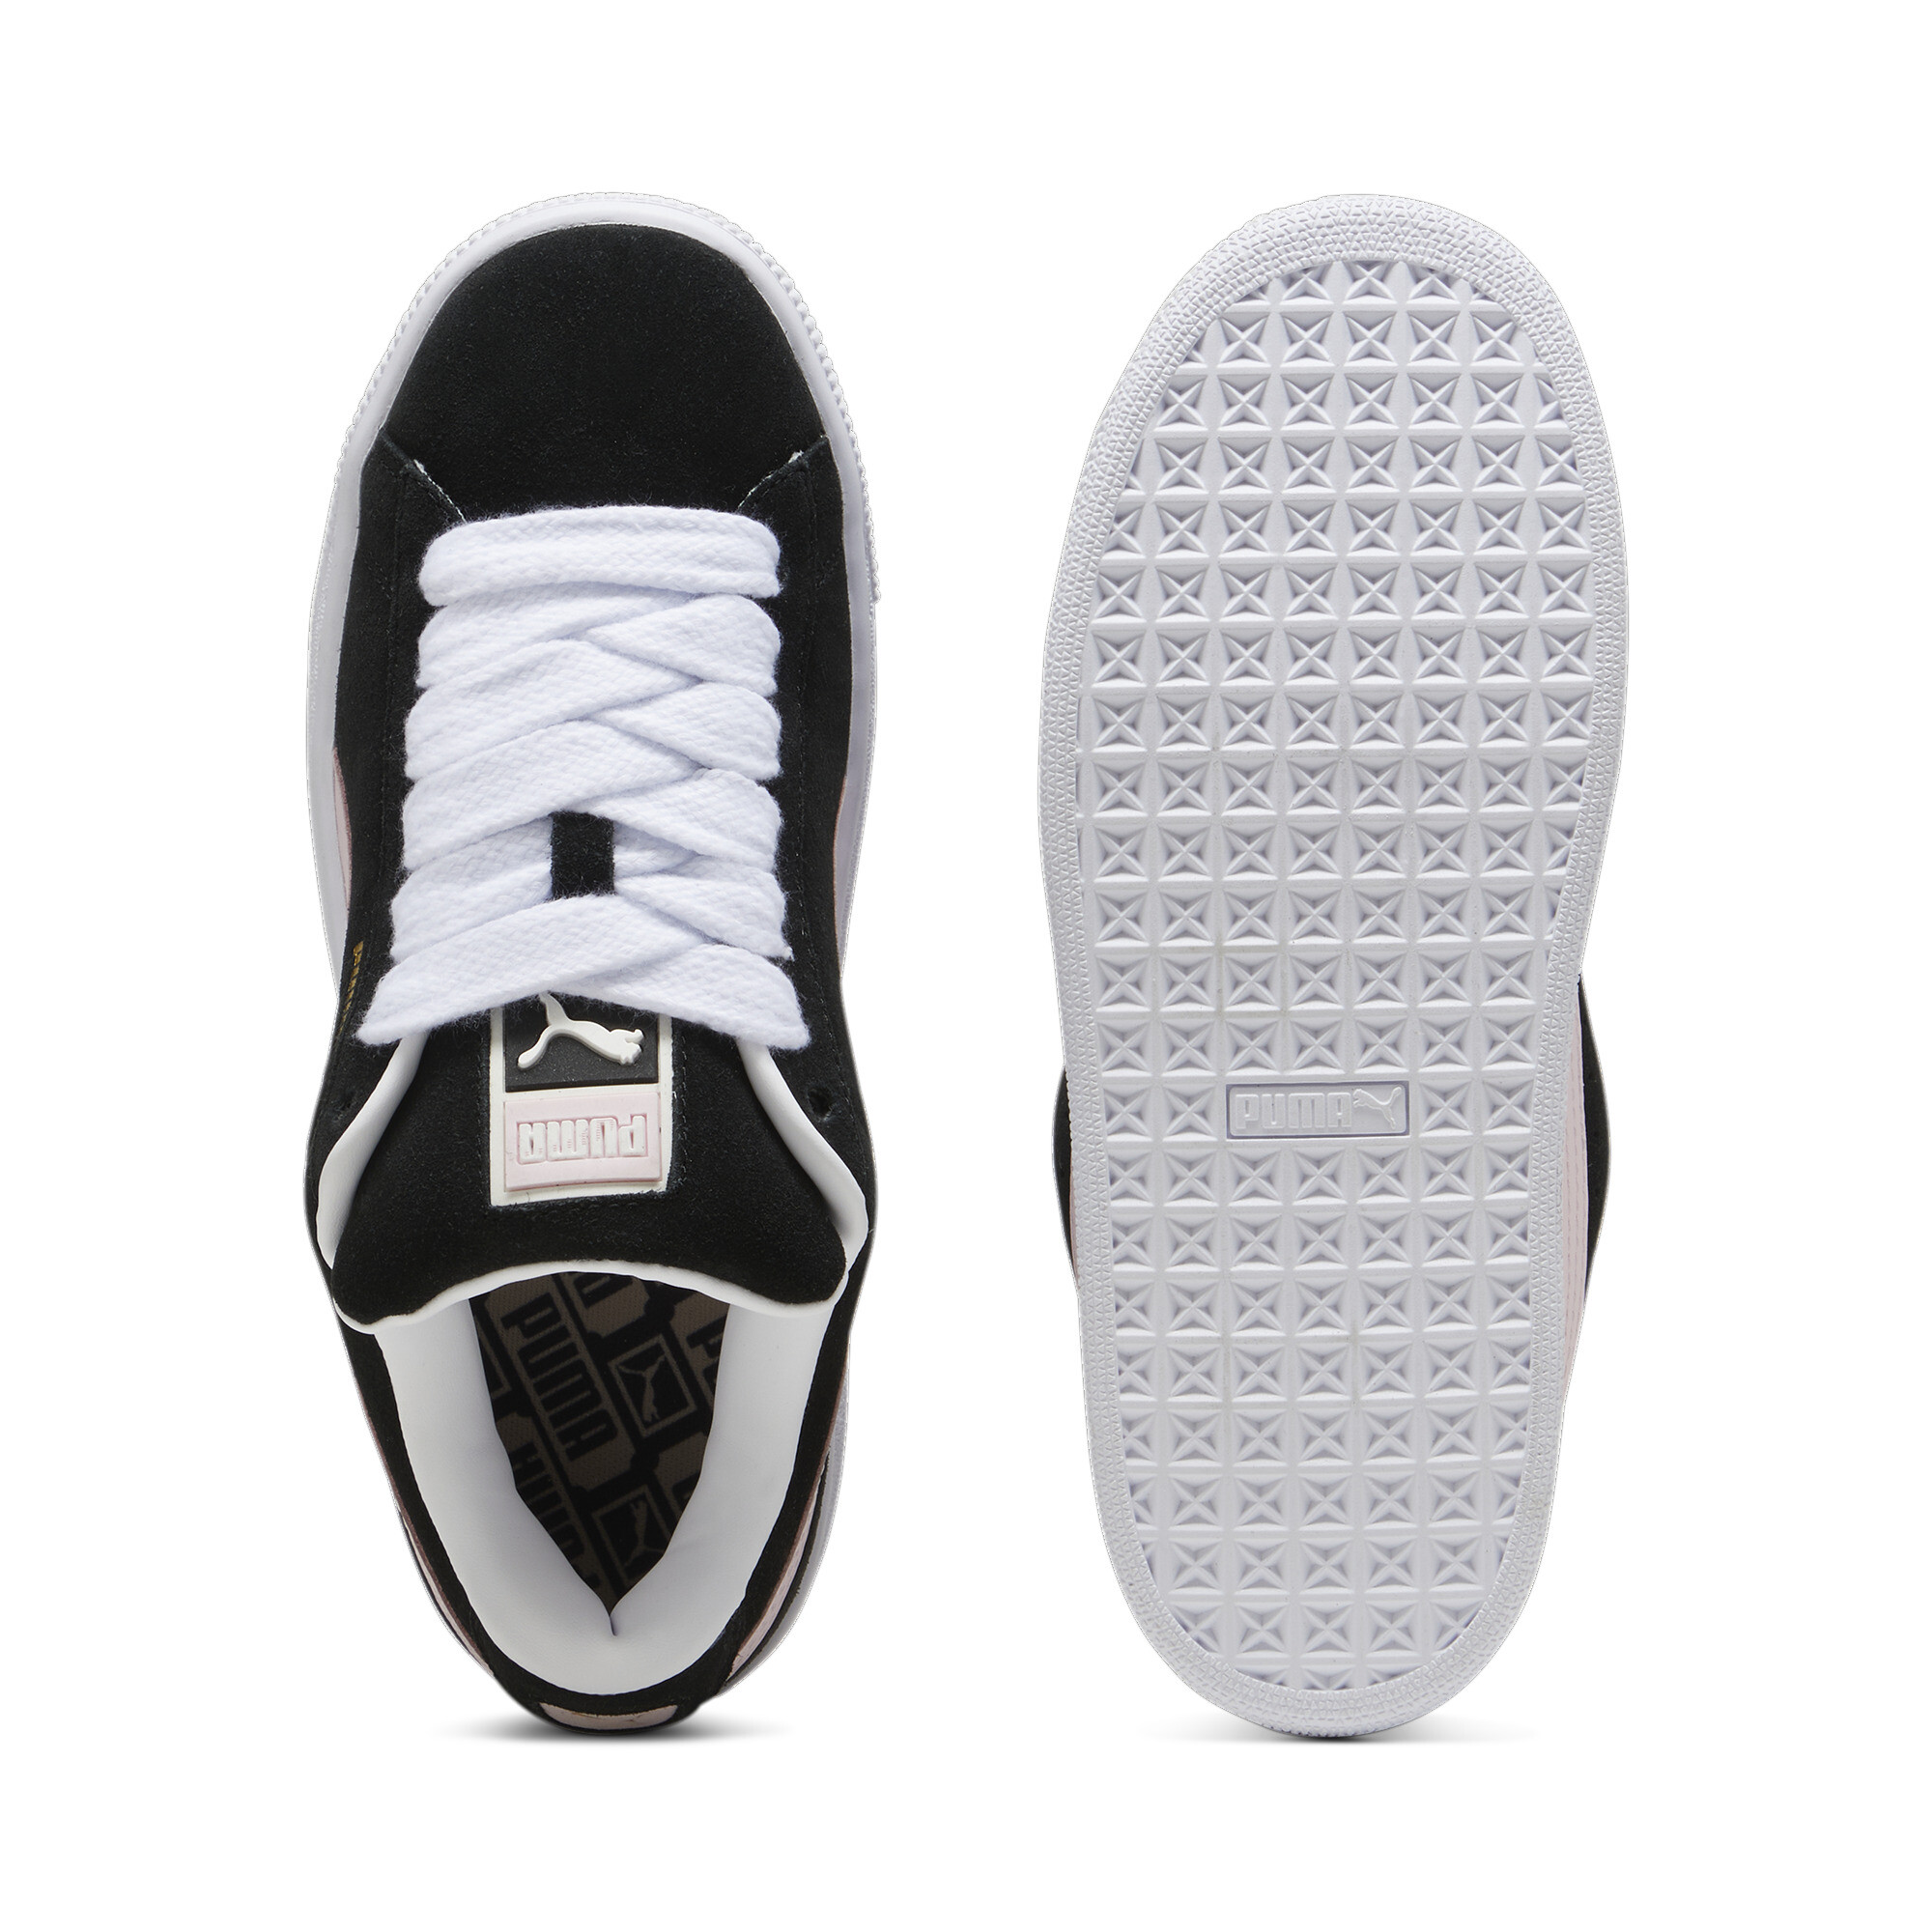 Puma Suede XL Sneakers Unisex, Black, Size 44, Shoes